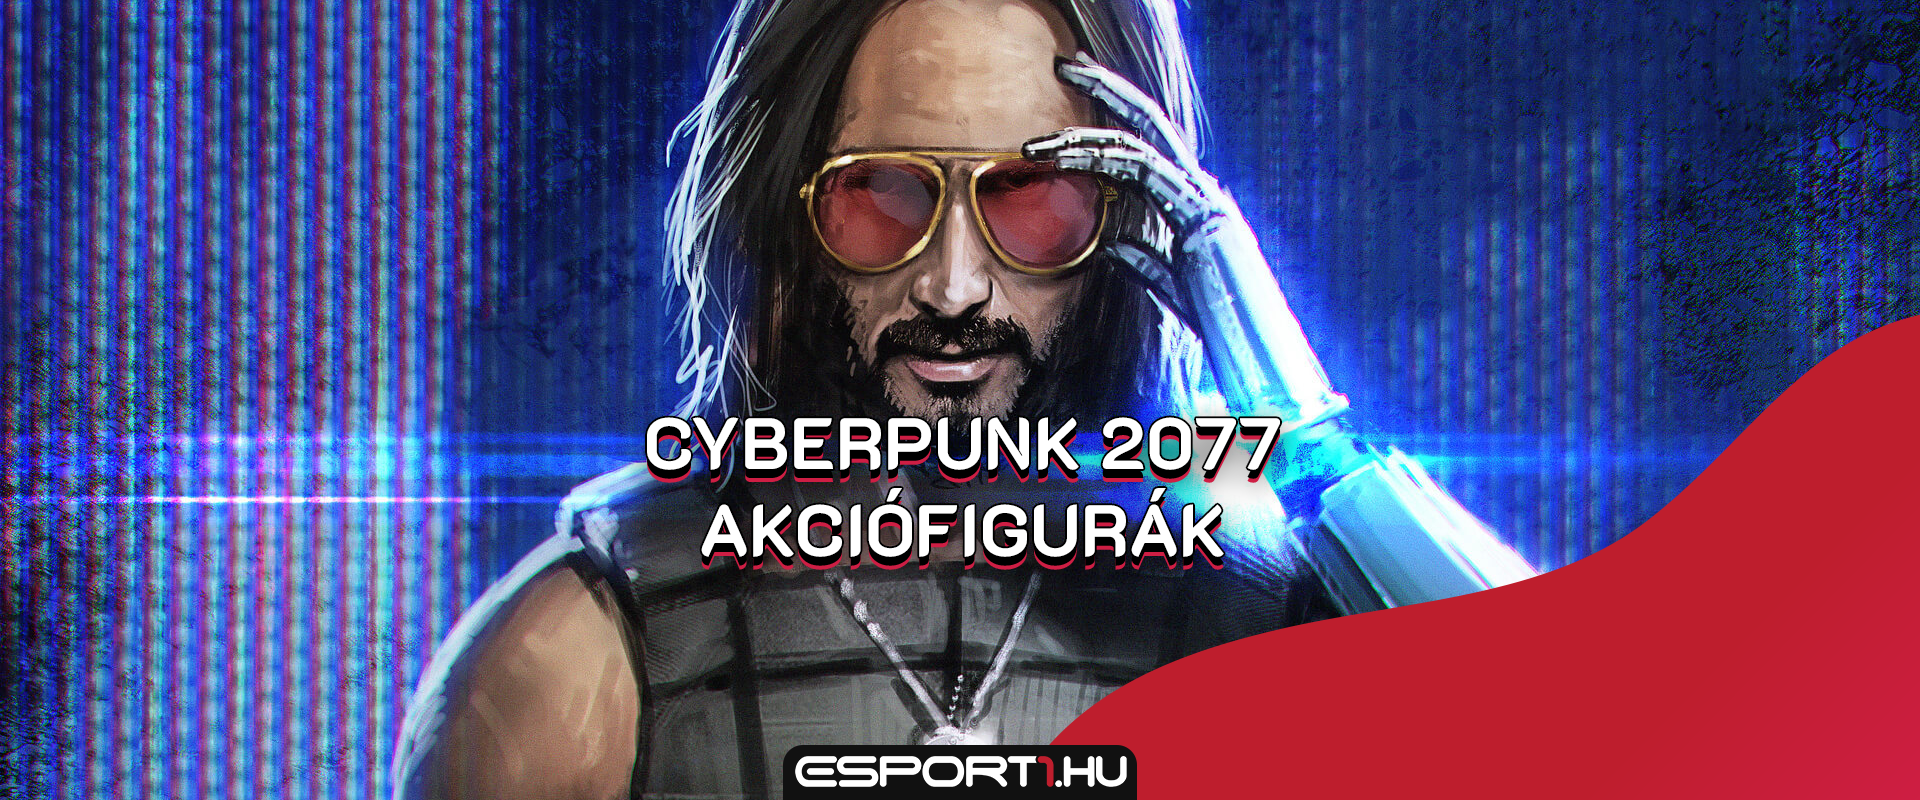 Itt van a Cyberpunk 2077-hez készített Keanu Reeves akcióhős figura!